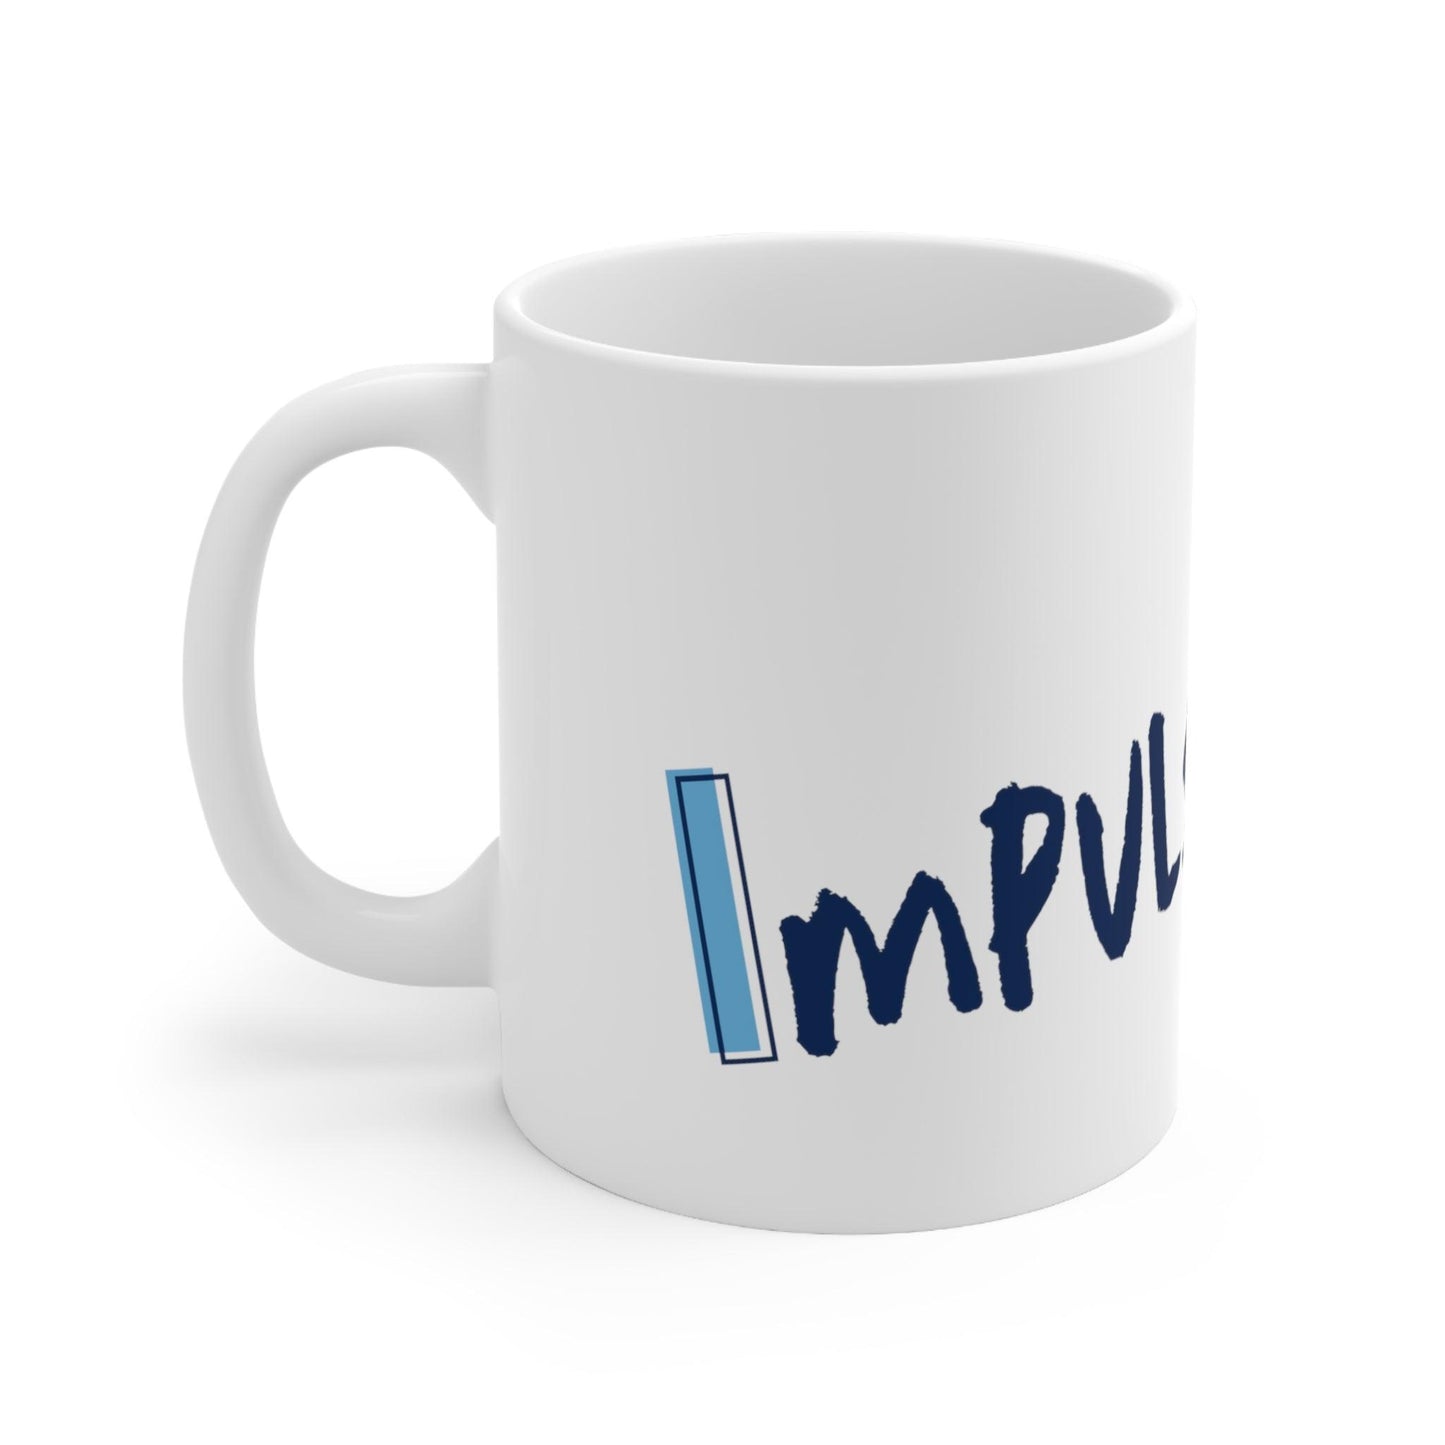 ImpulsiviTEA Mug - A Quick Sip of Focus and Fun - Fidget and Focus